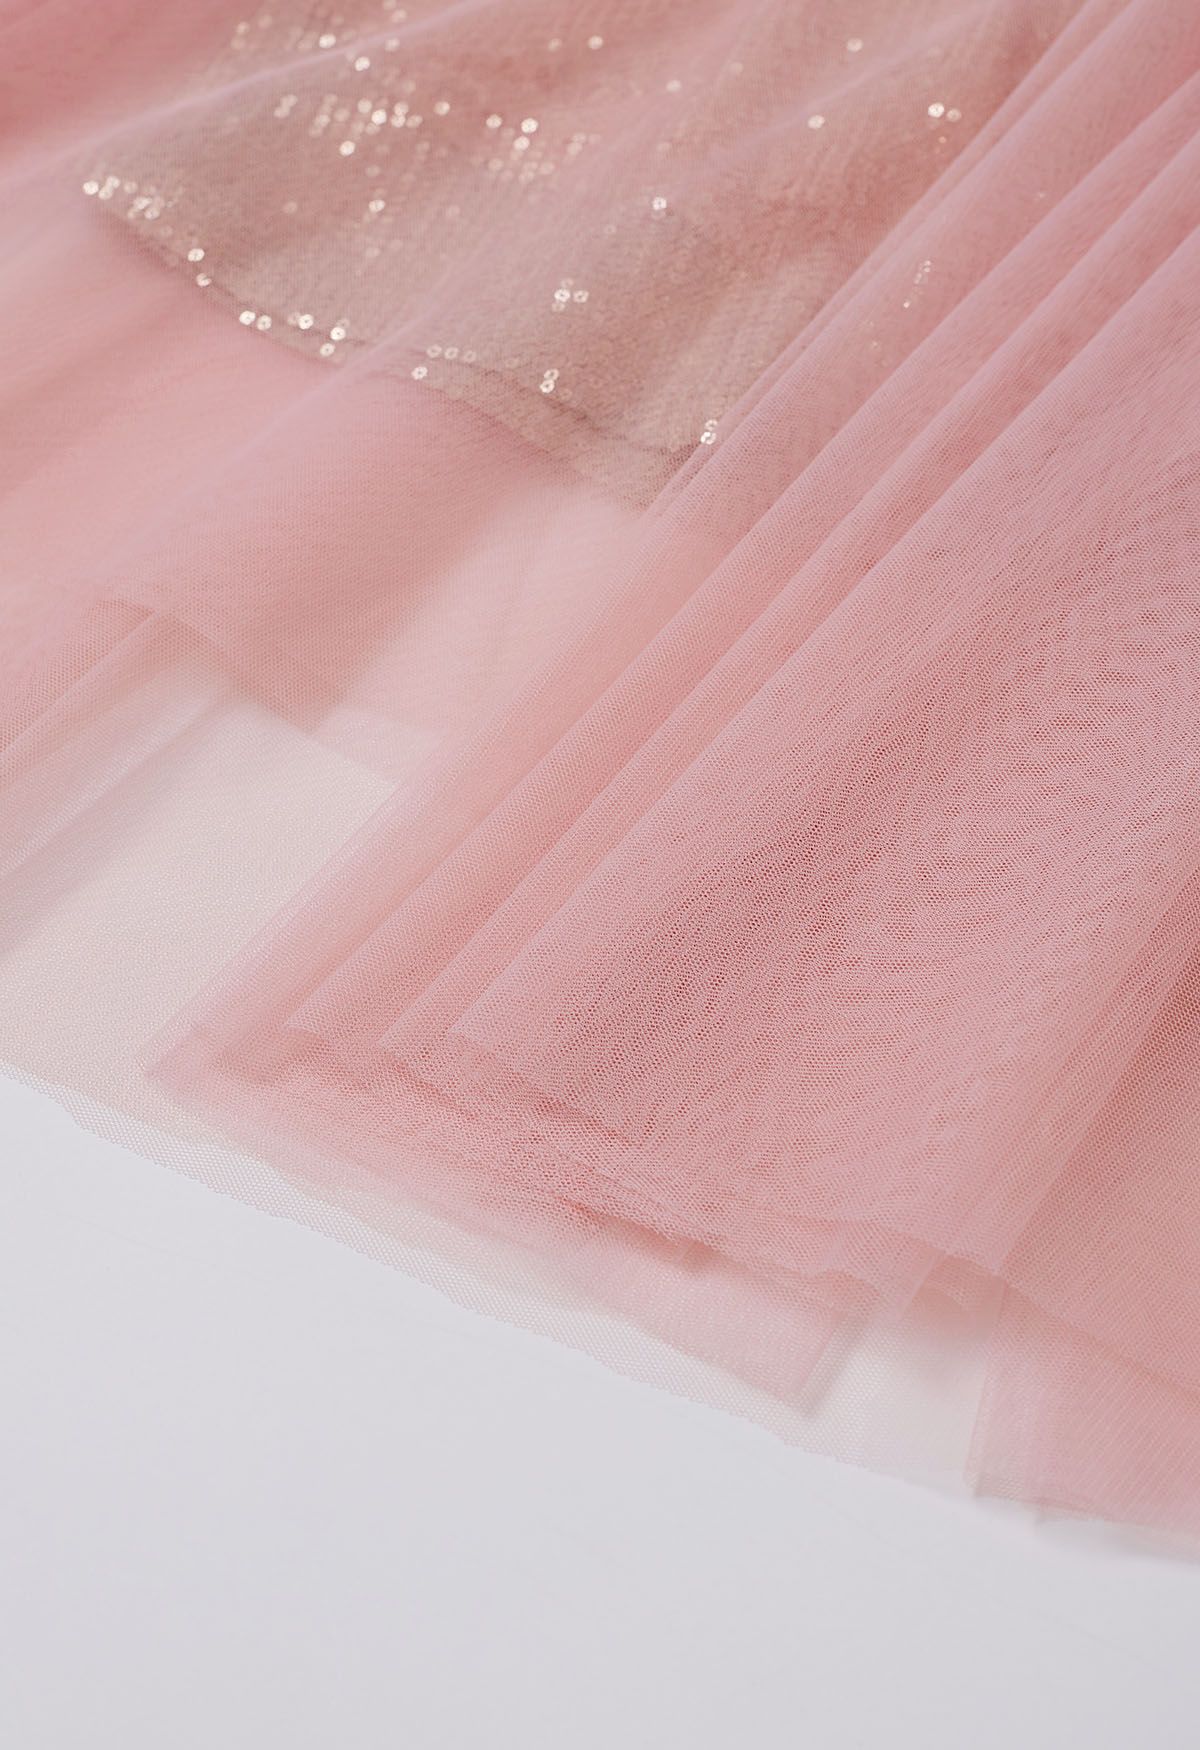 Falda midi de tul y malla con lentejuelas deslumbrantes en rosa